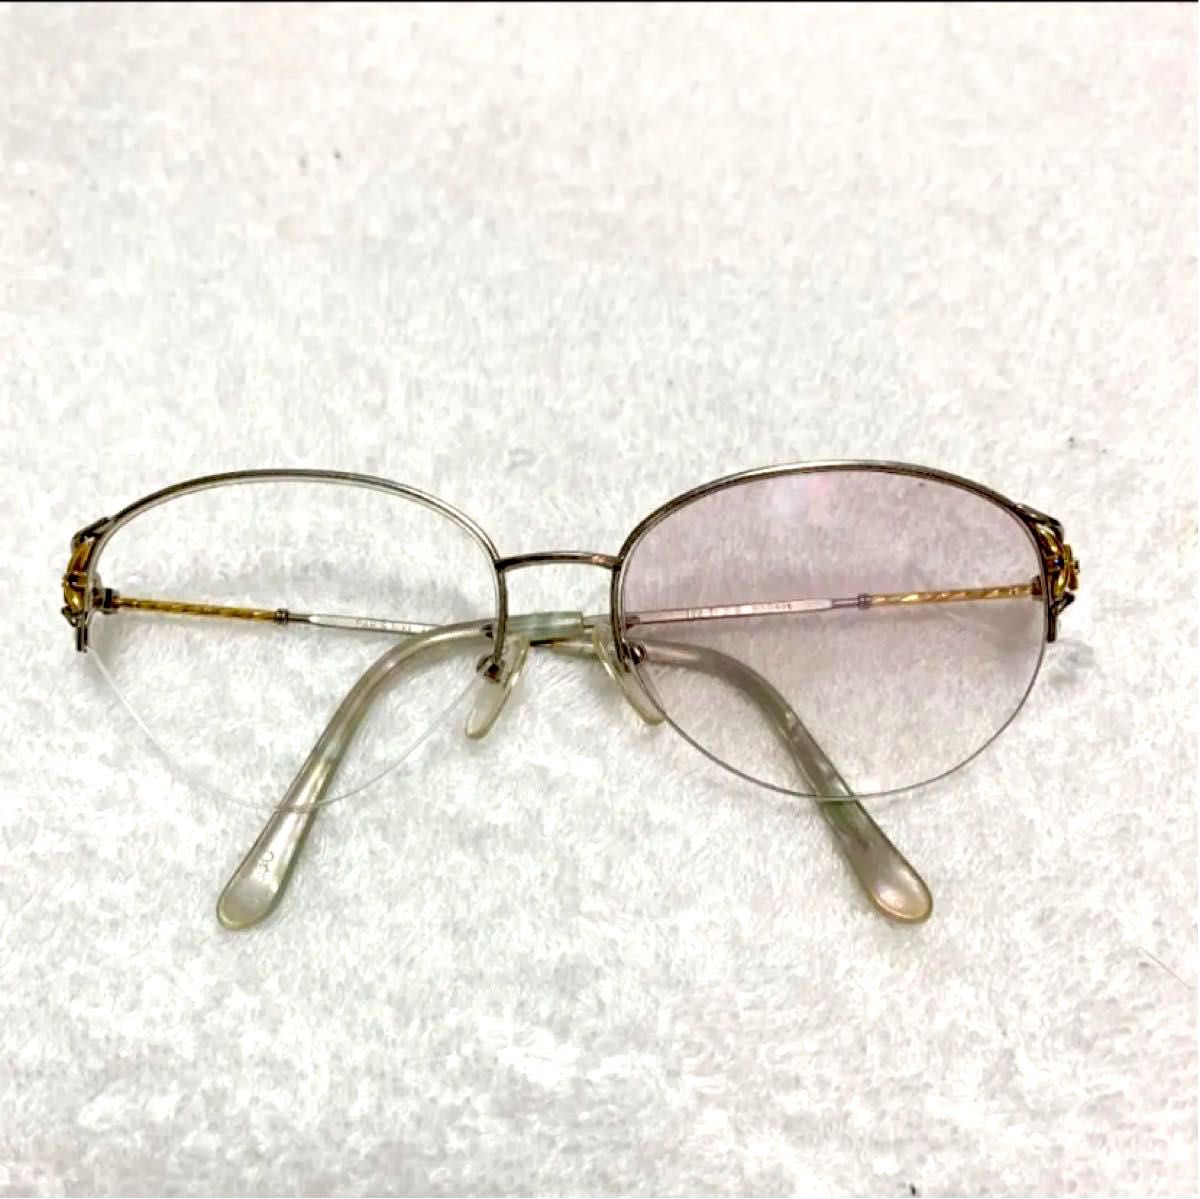 K18 18金 PARIS MIKI パリミキ 眼鏡 メガネ メガネフレーム K18飾り